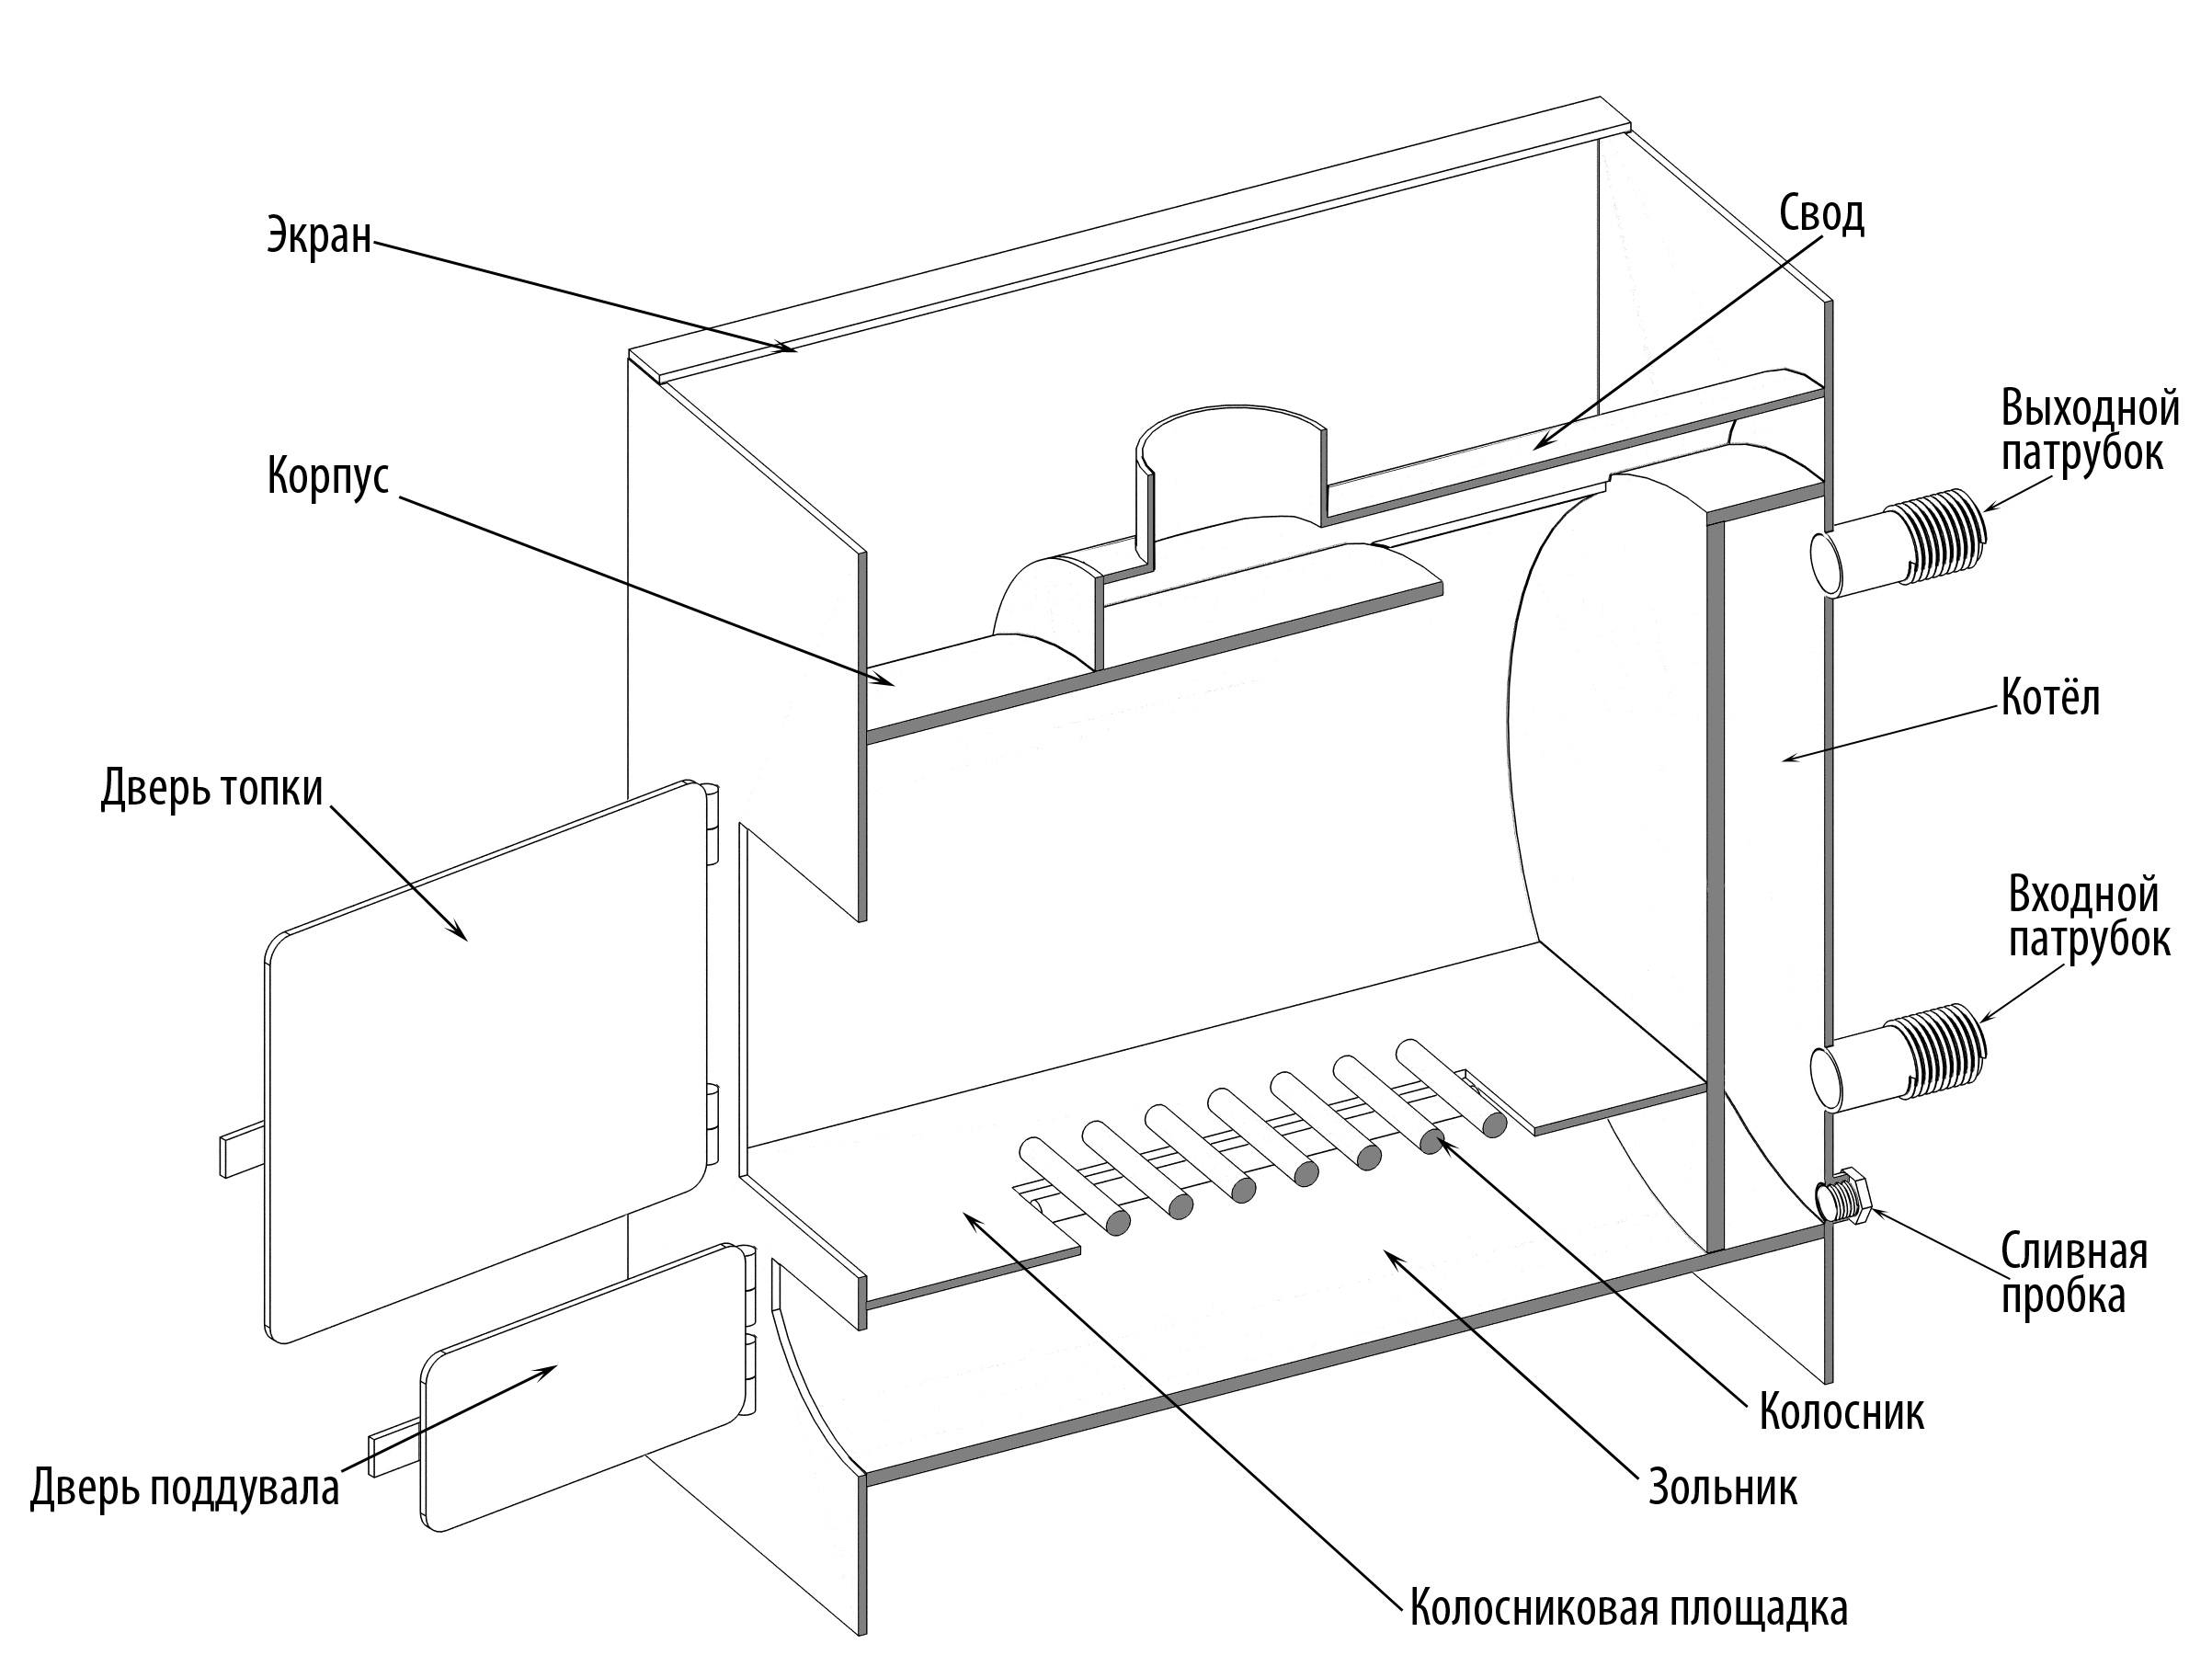 Как составить чертёж банной печи: устройство печи из металла согласно чертежу и полезные советы